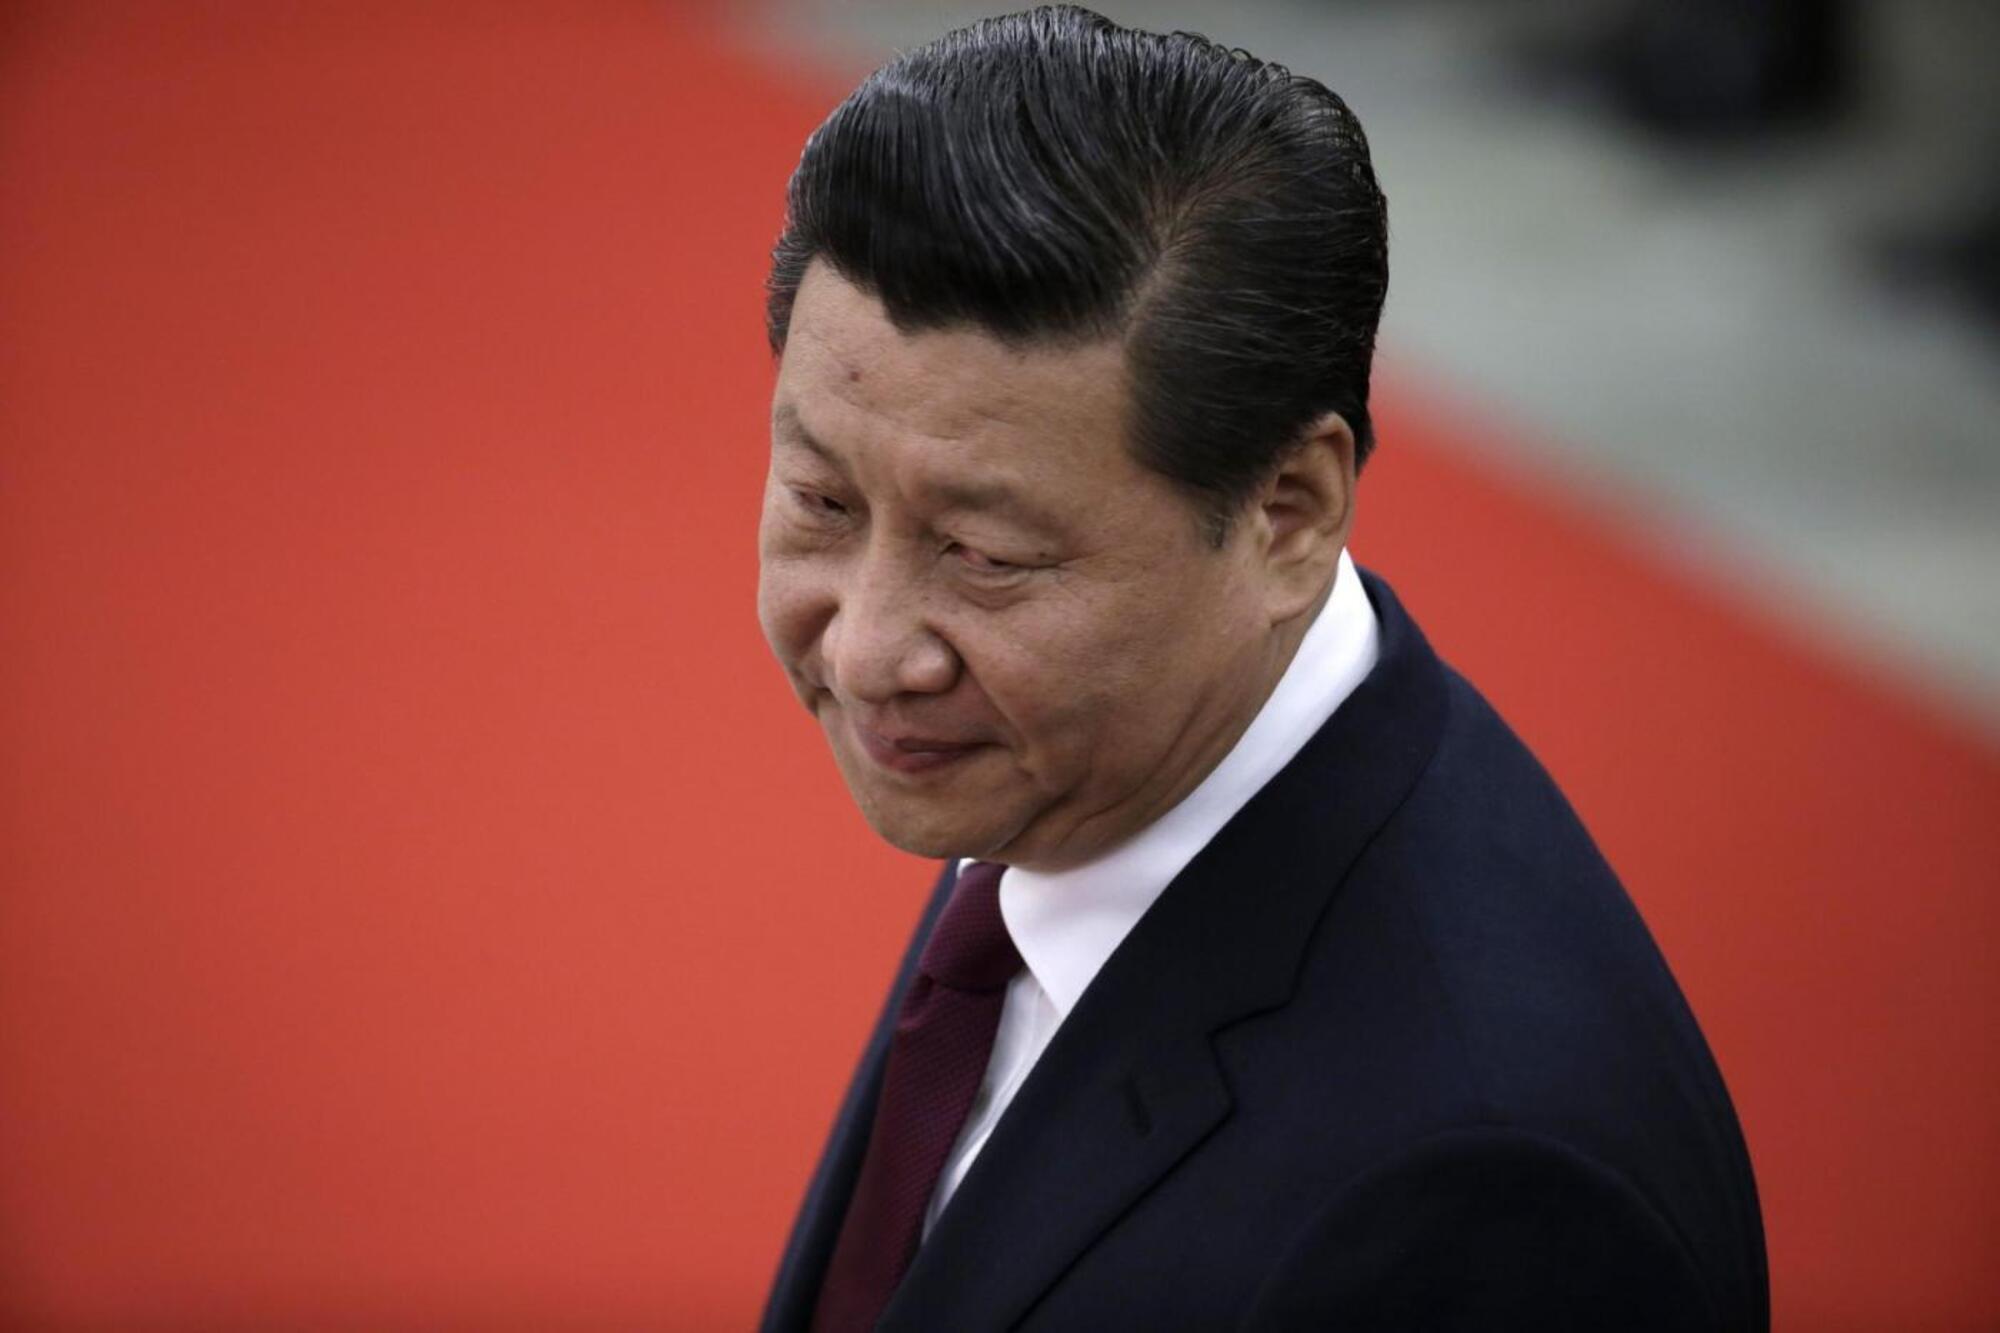 Il presidente della Cina Xi Jinping